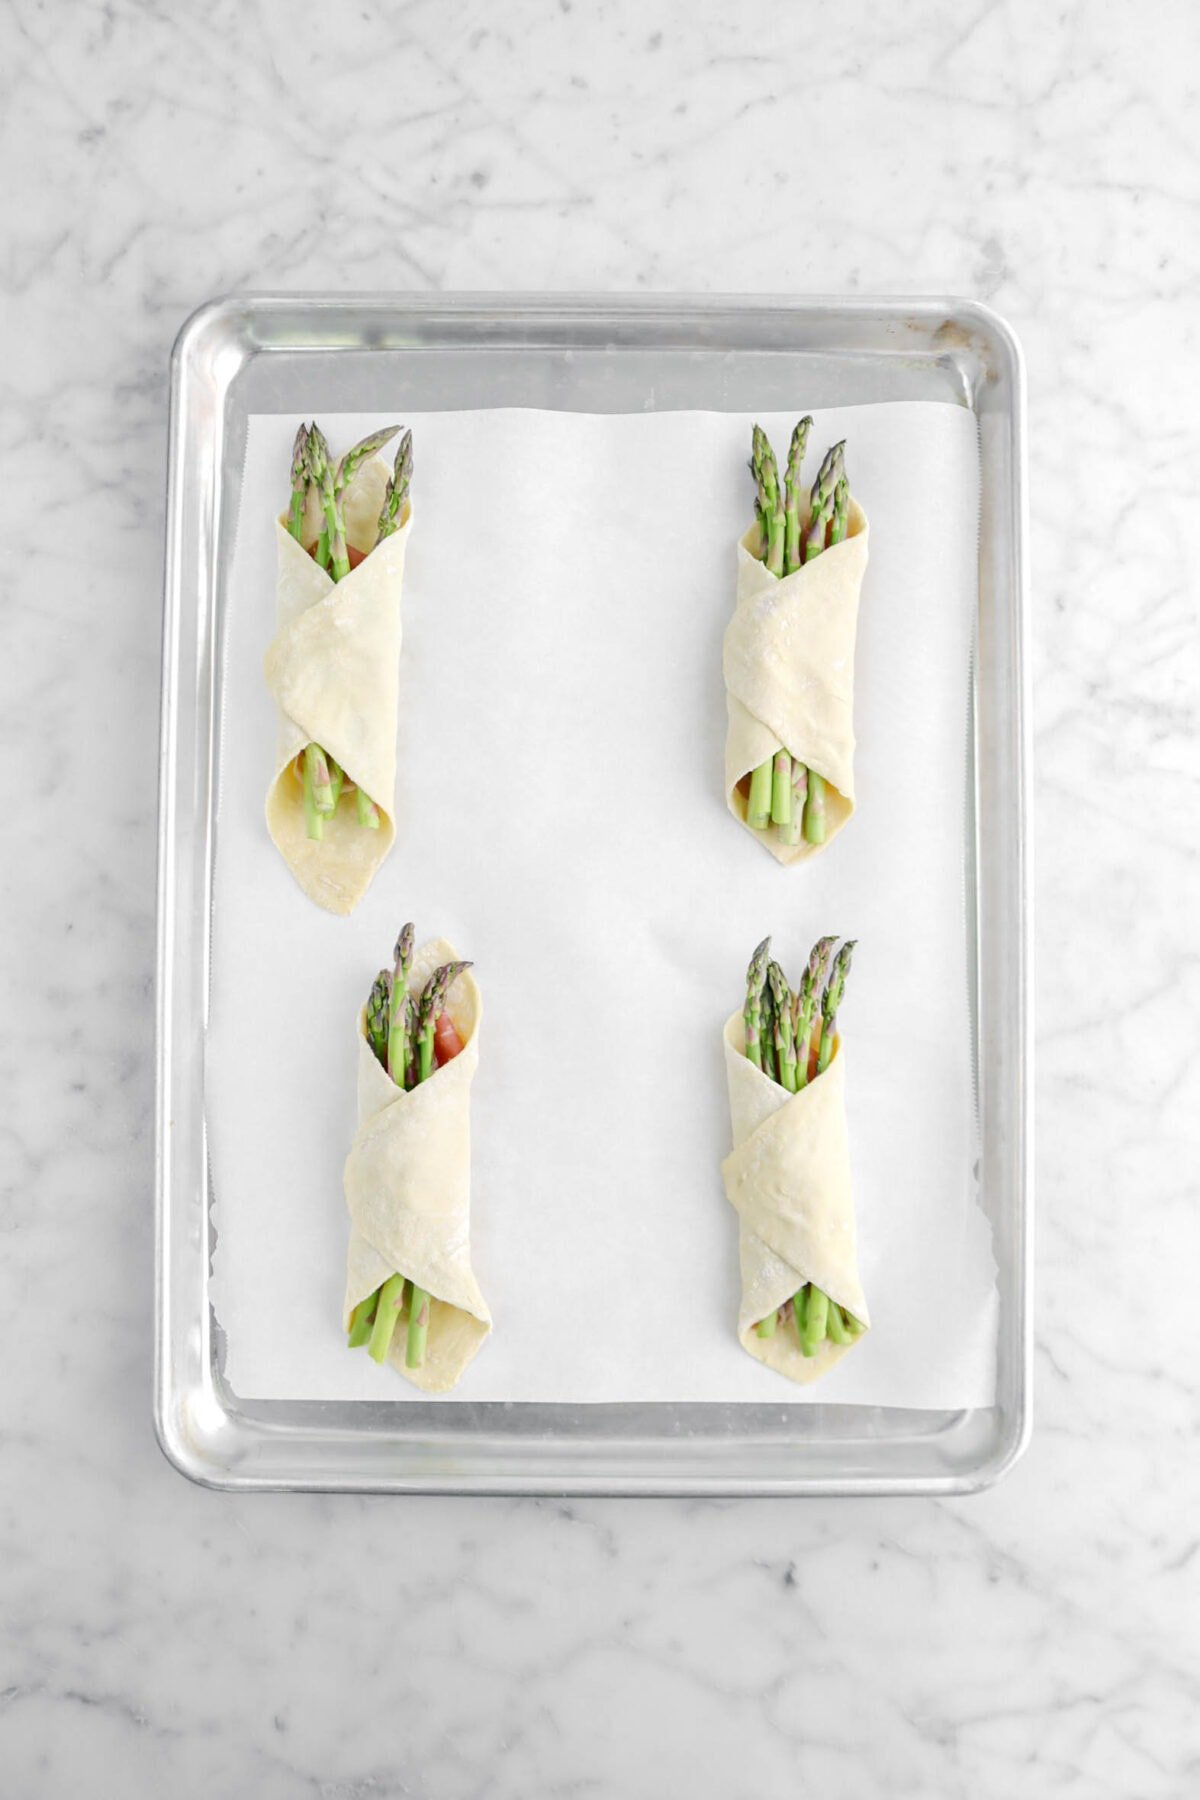 four asparagus bundles on parchment lined sheet pan.